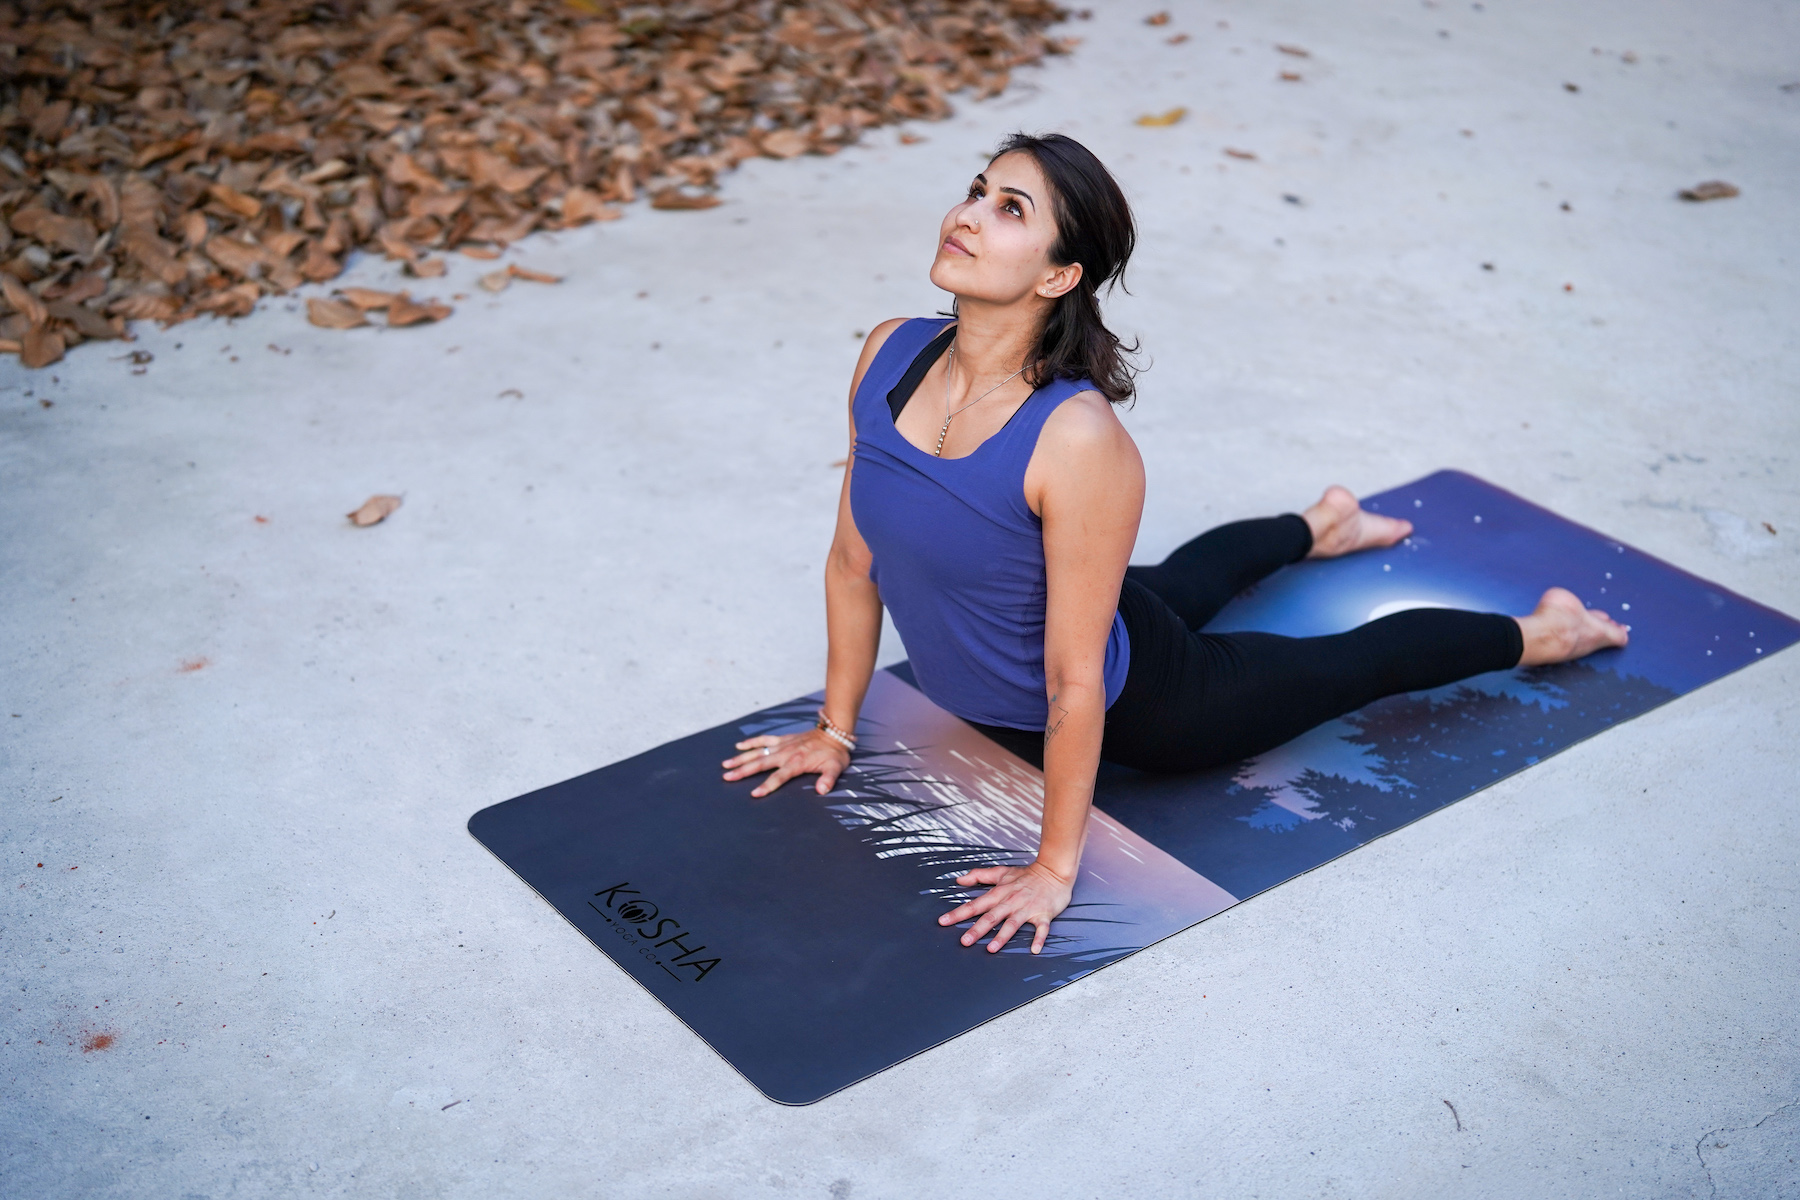 Designed Yoga Mat - Infinity Yoga Mat - Best Yoga Mats for yoga